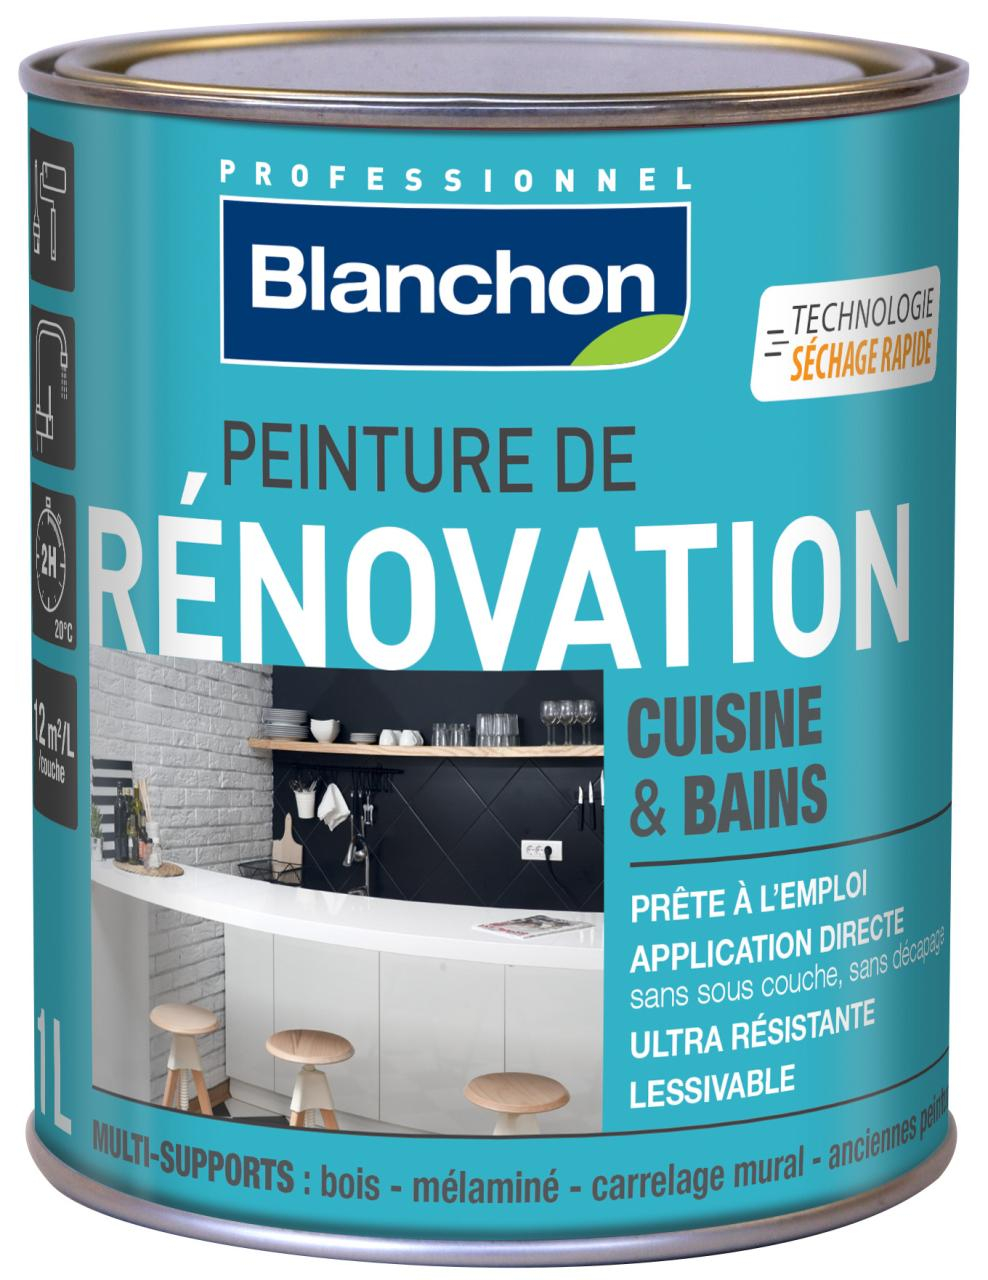 peinture-renovation-cuisine-et-bain-1l-blanc-casse-blanchon-0